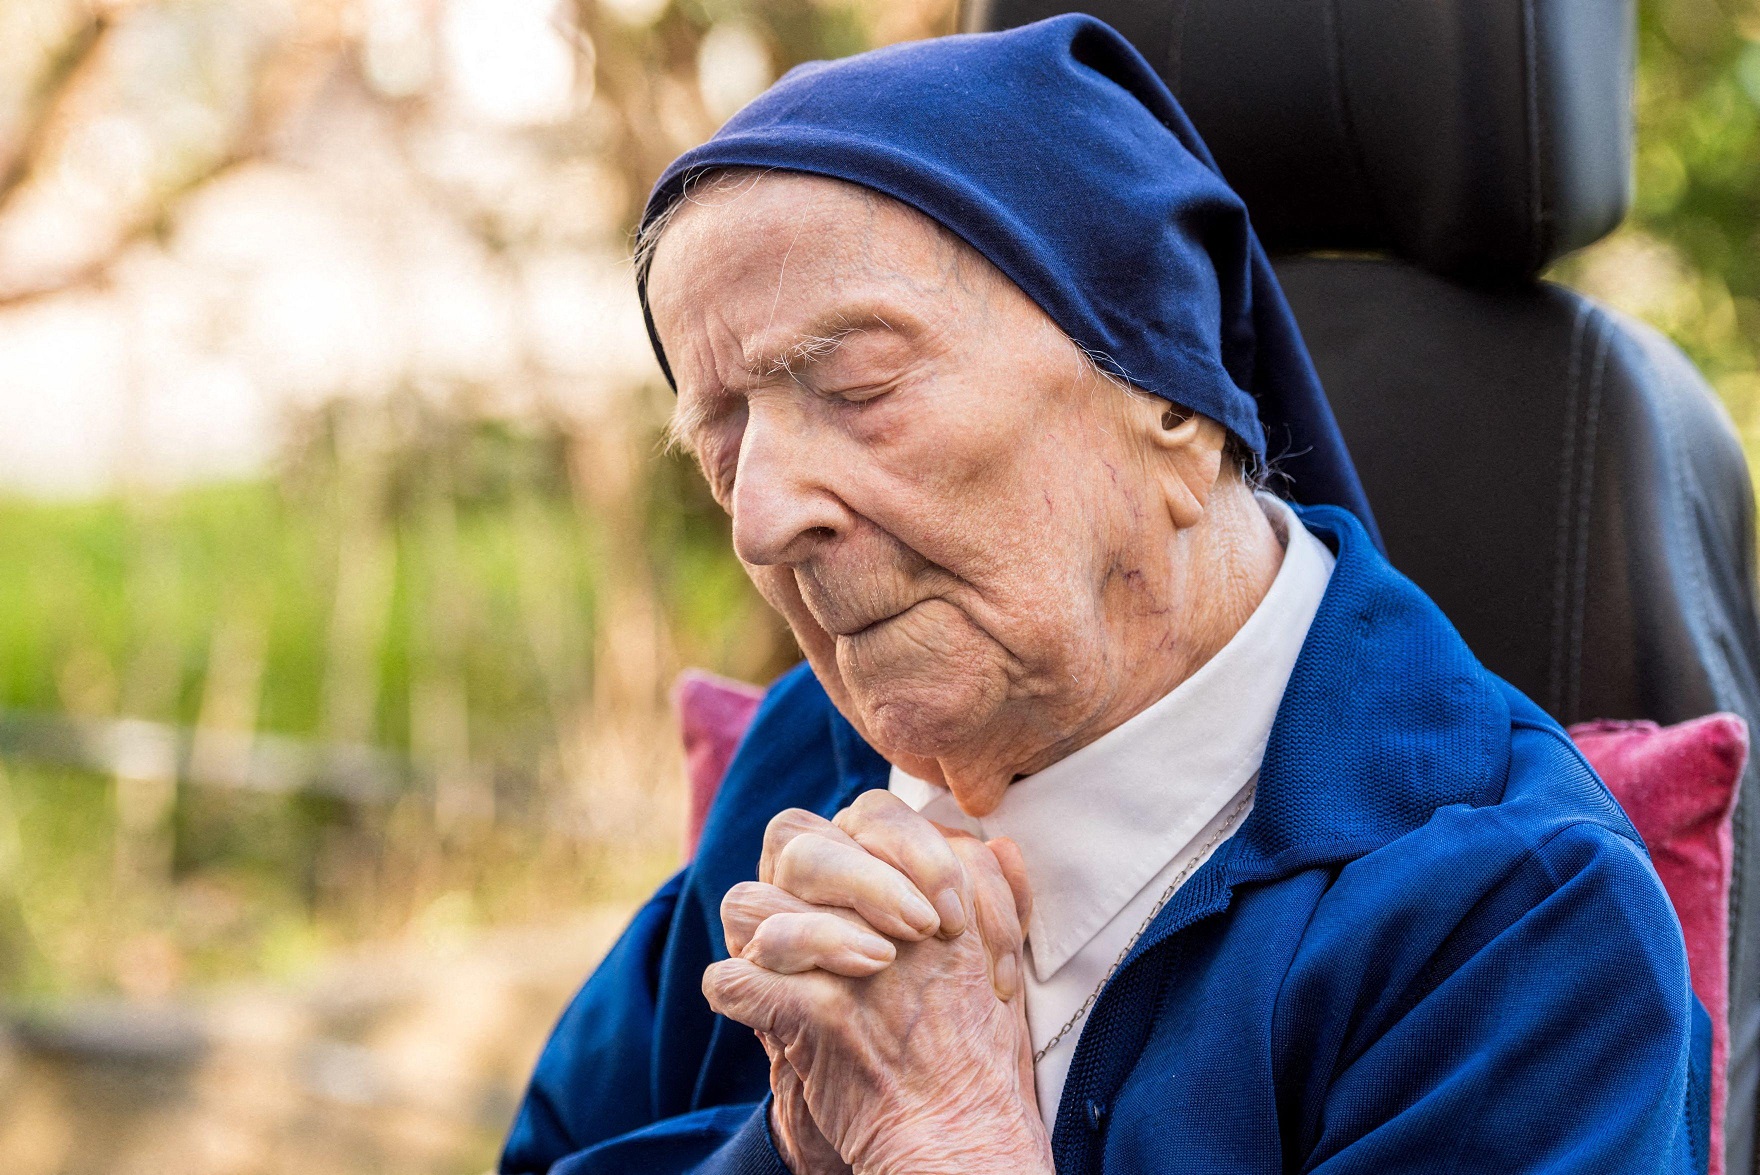 Старейшая жительница Земли – монахиня, помогавшая сиротам и старикам, умерла в 118 лет